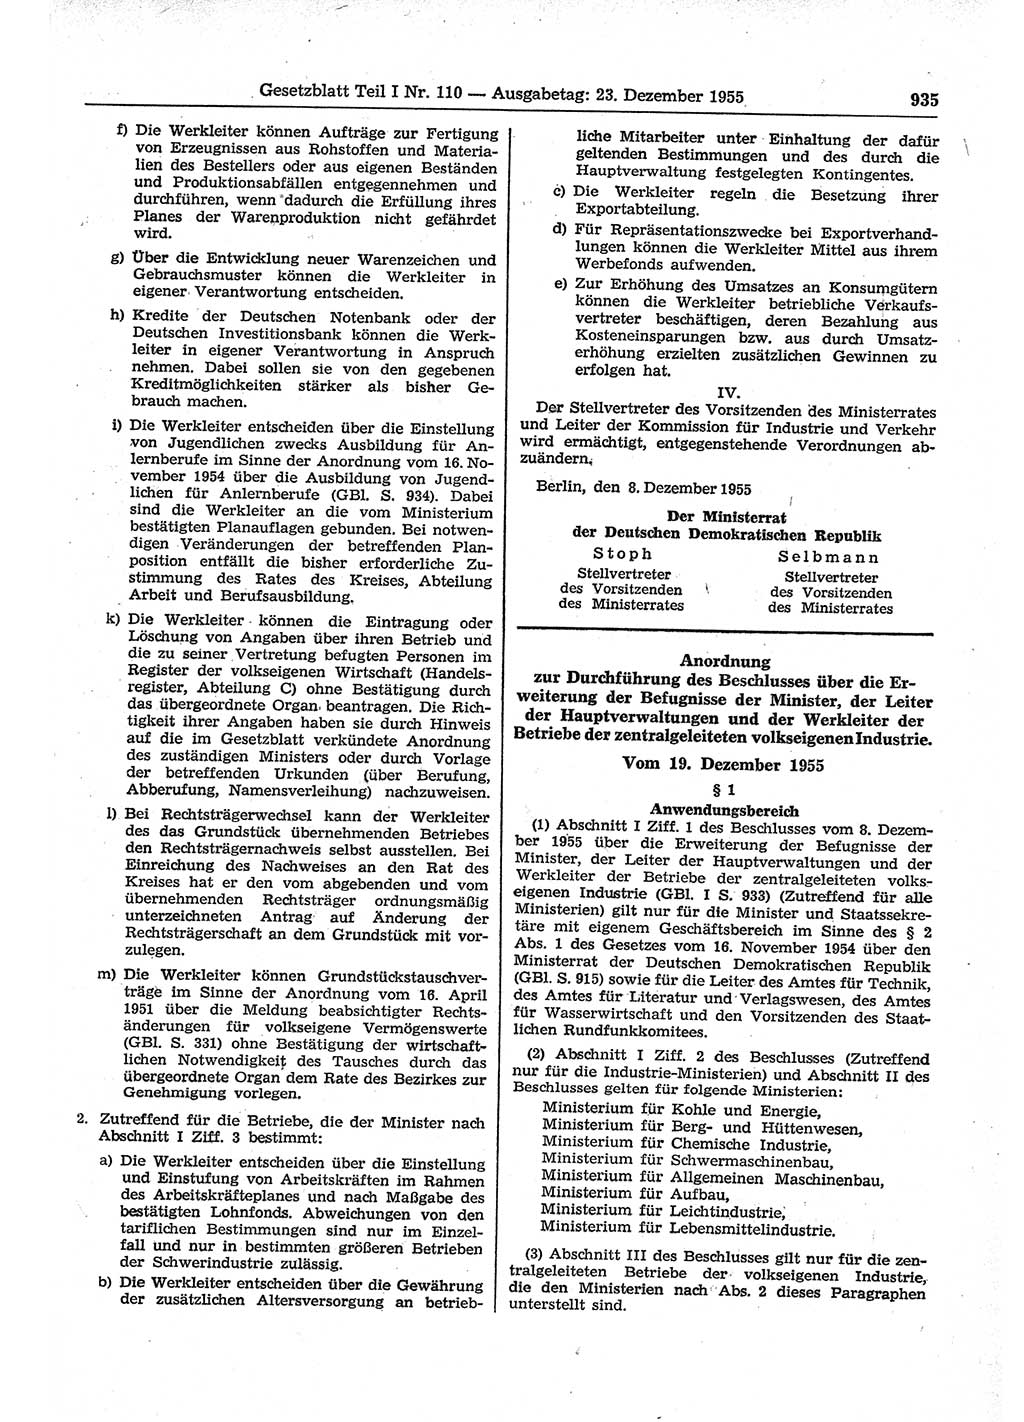 Gesetzblatt (GBl.) der Deutschen Demokratischen Republik (DDR) Teil Ⅰ 1955, Seite 935 (GBl. DDR Ⅰ 1955, S. 935)